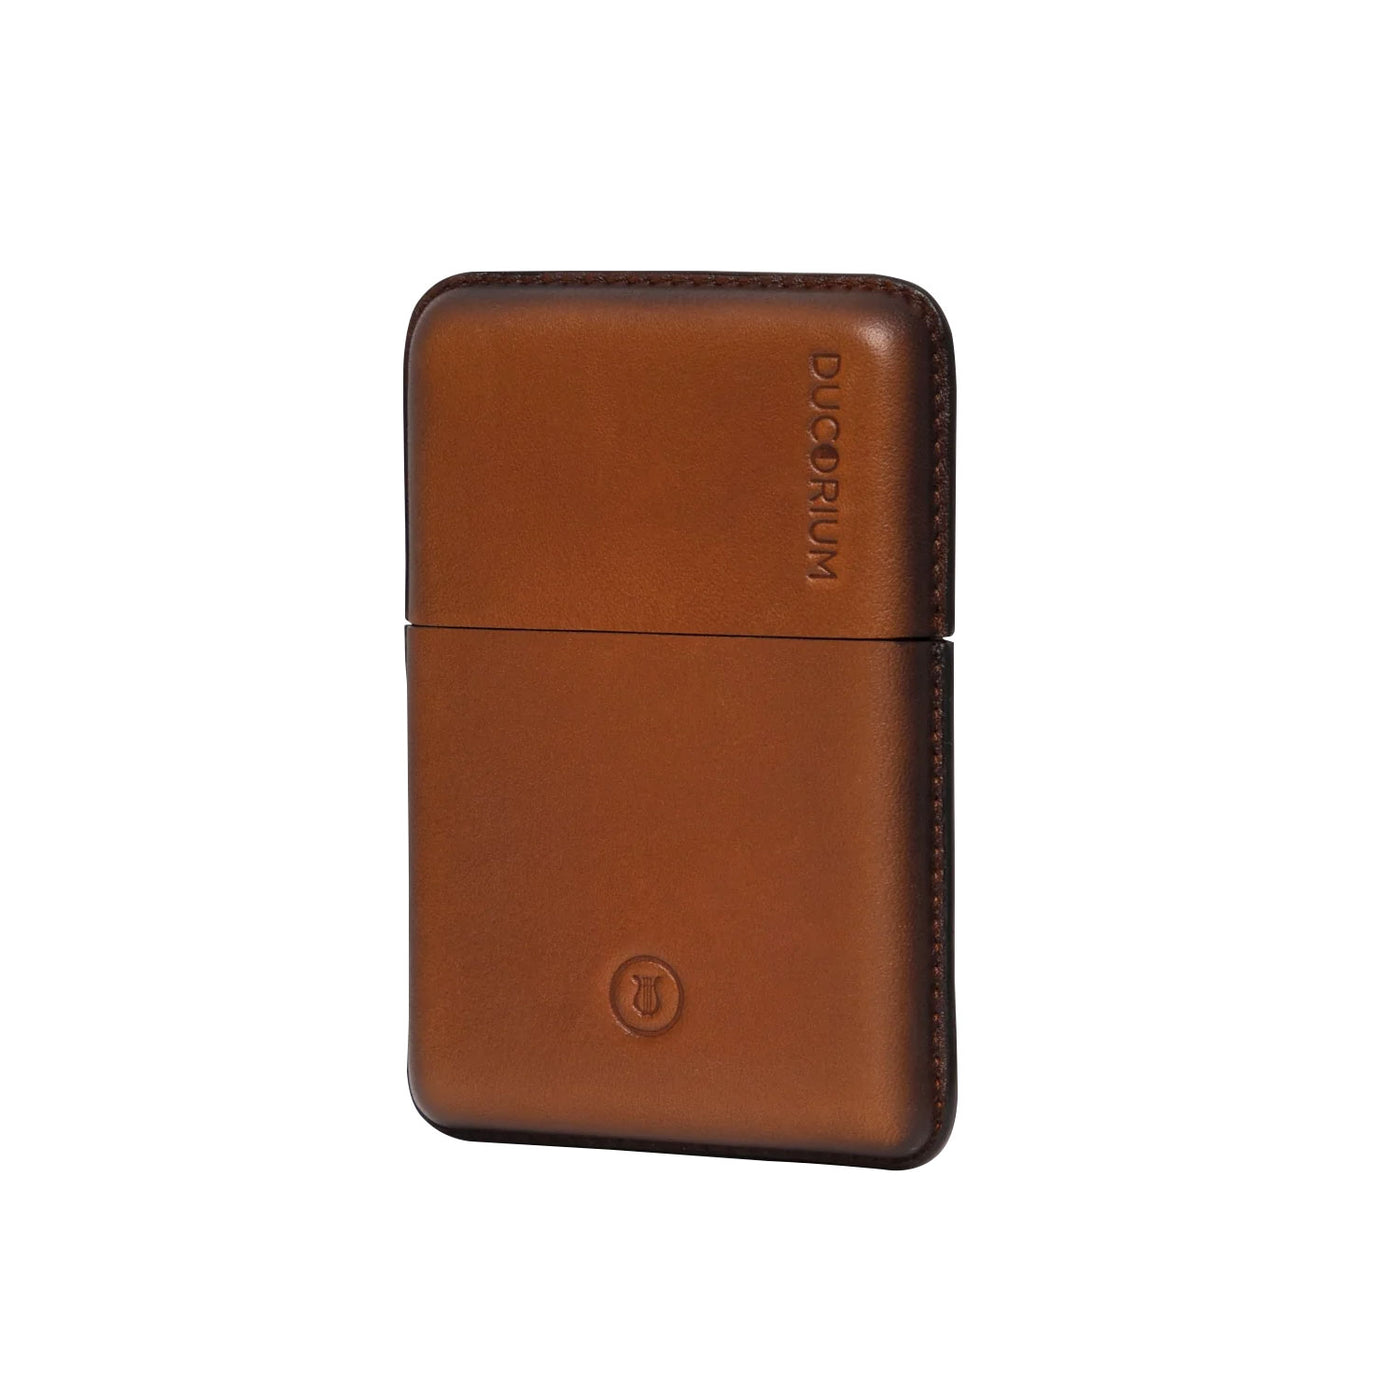 Lapis Bard Ducorium Moulded Card Case - Cognac 8